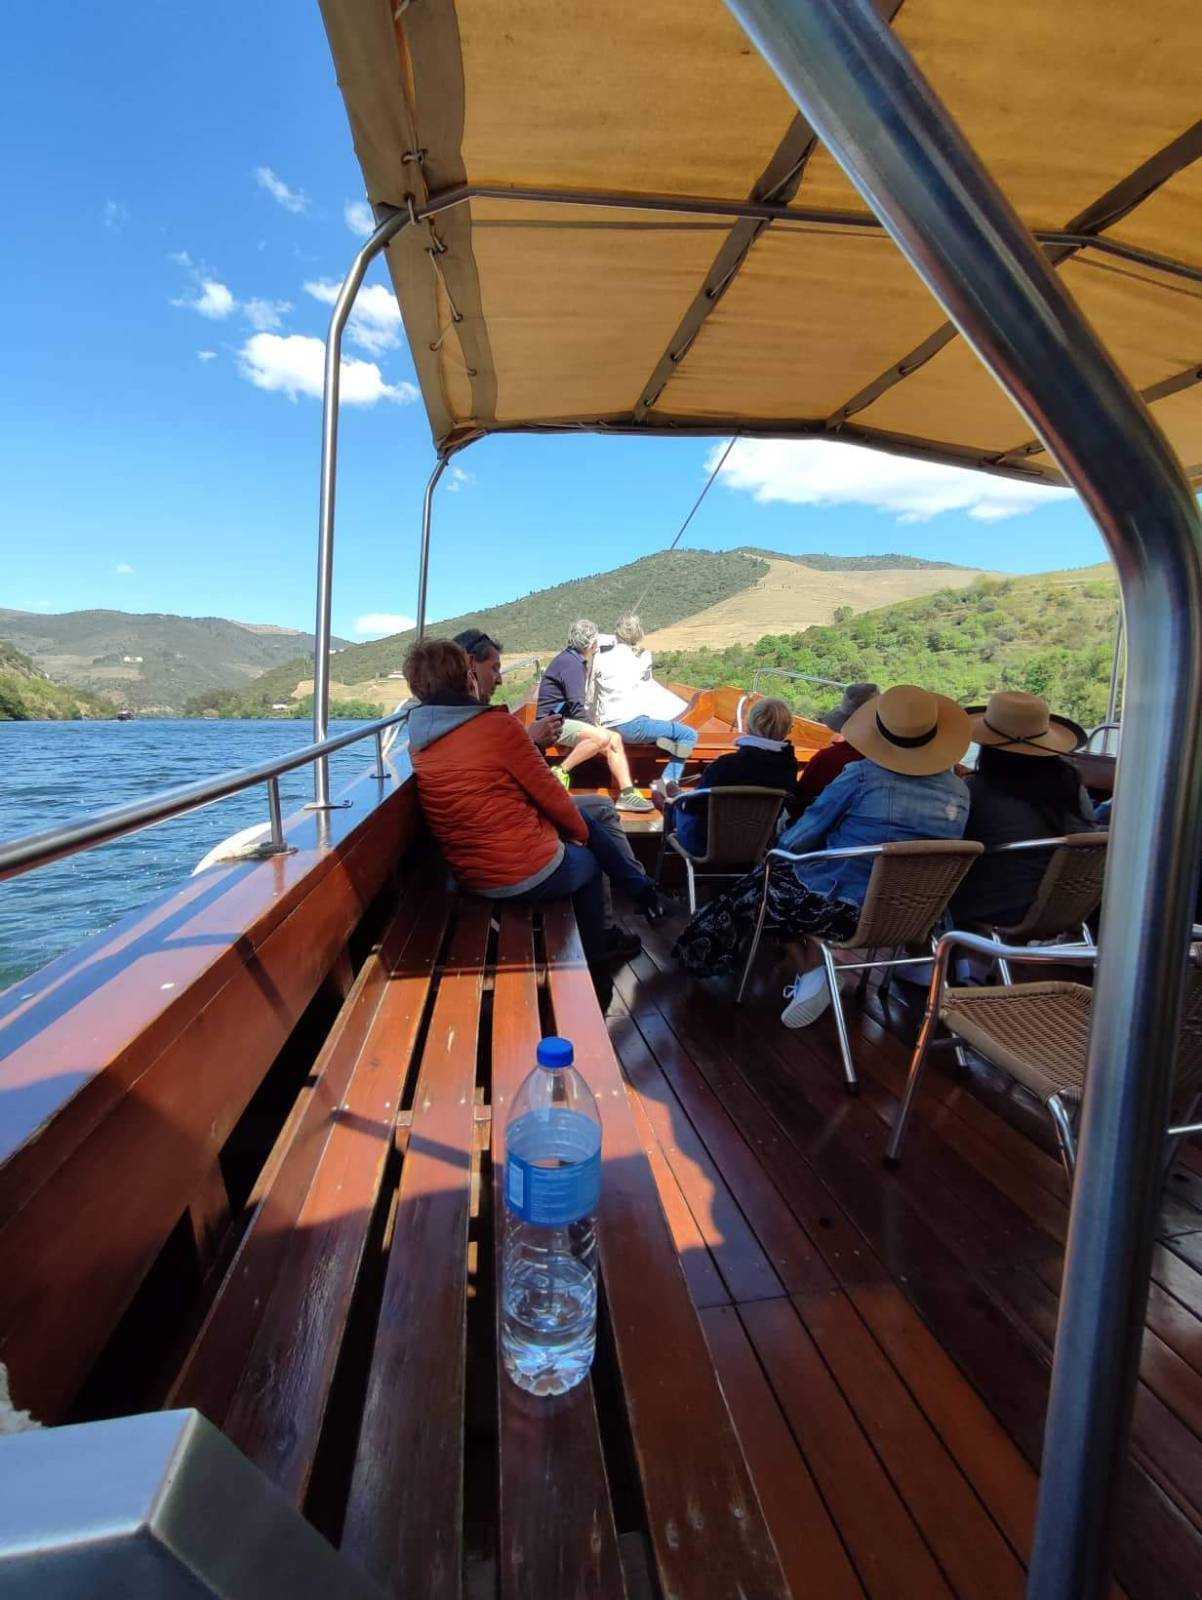 Boat ride - Douro river